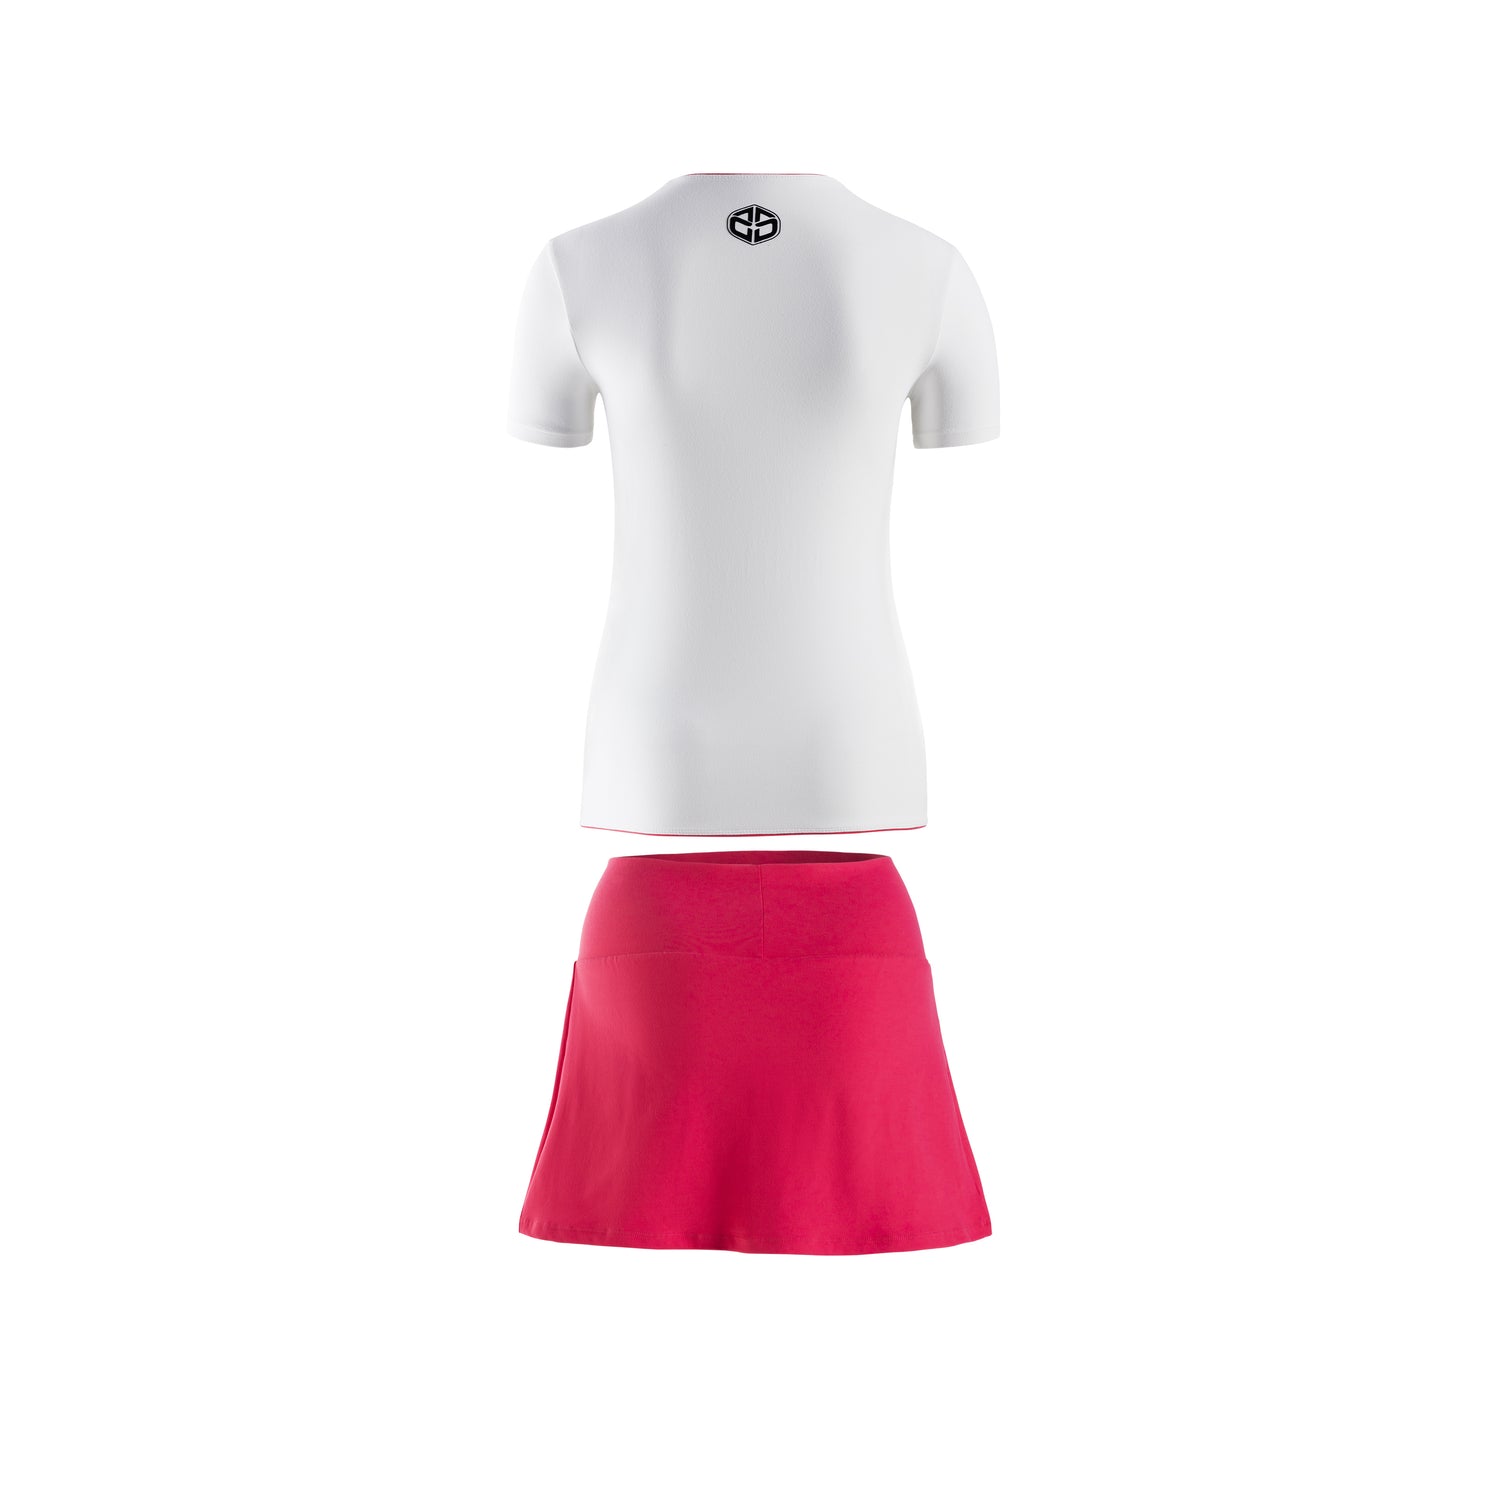 Camiseta Manga Corta Blanca + Falda Roja